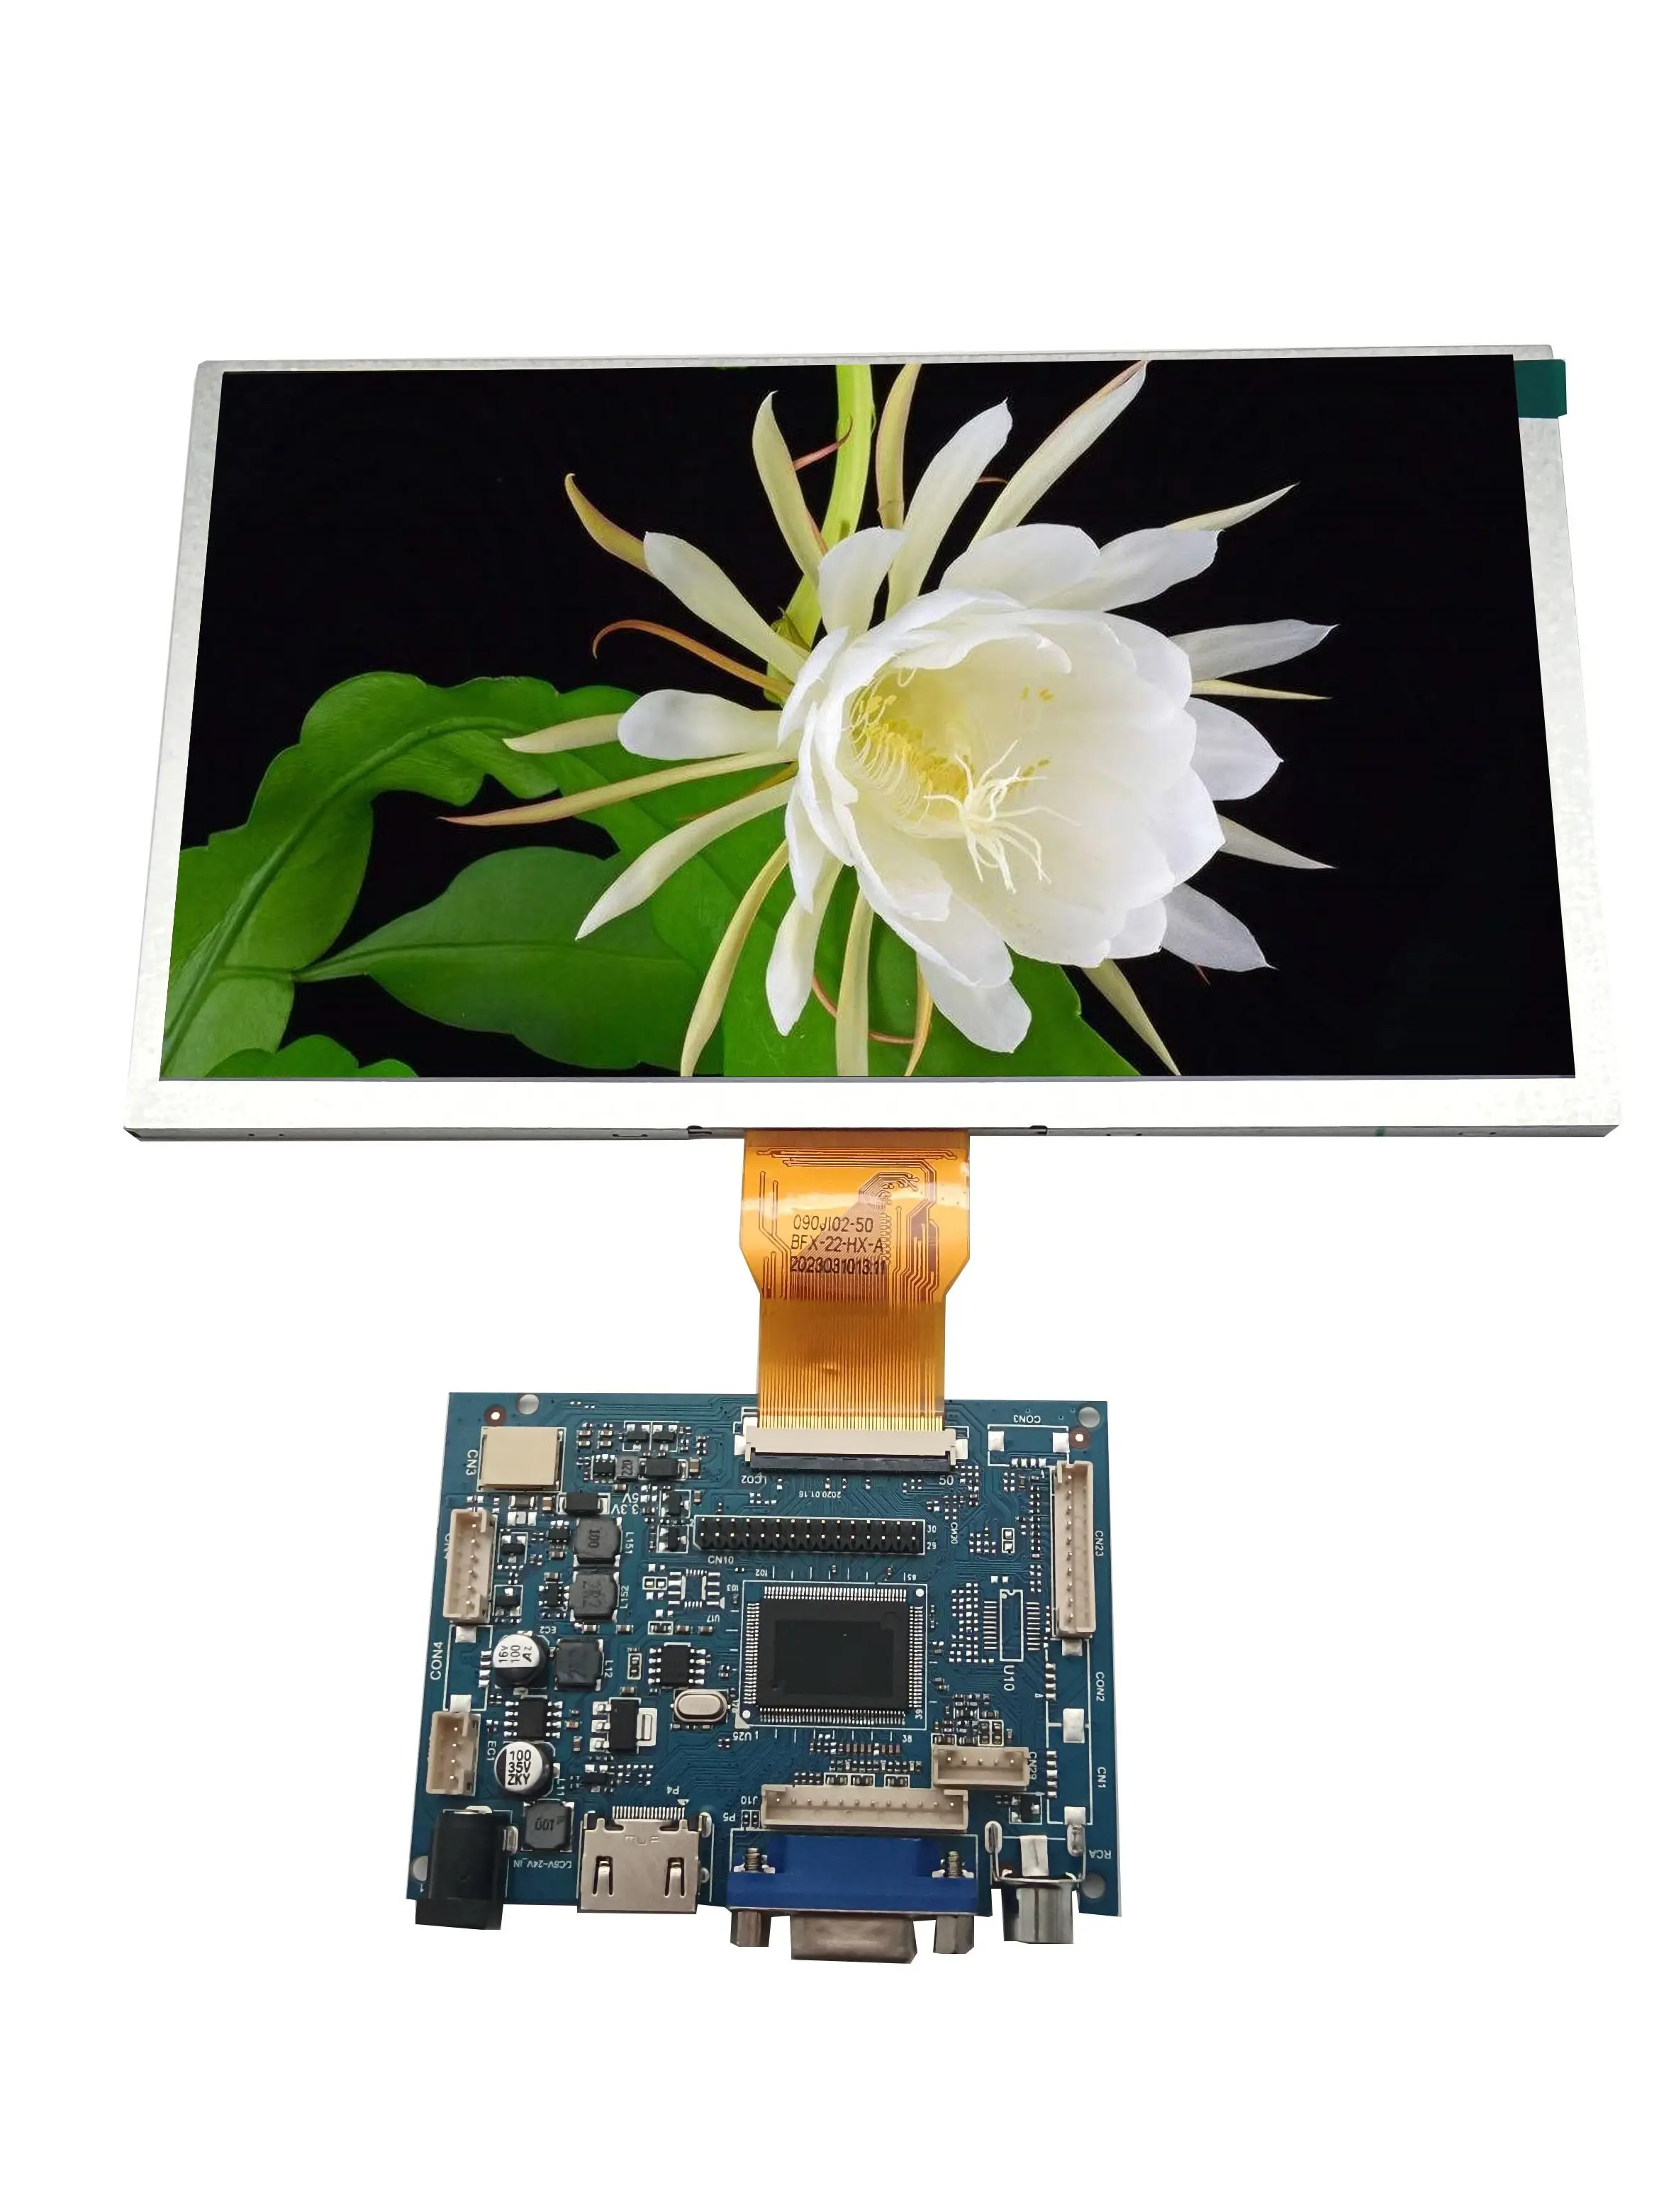 9-инчов сензорен LCD екран rgb50pin, промишлен екран за управление, такса HDMI 1024 * 600/800*480 IPS модул TFT, директни продажби с фабрика